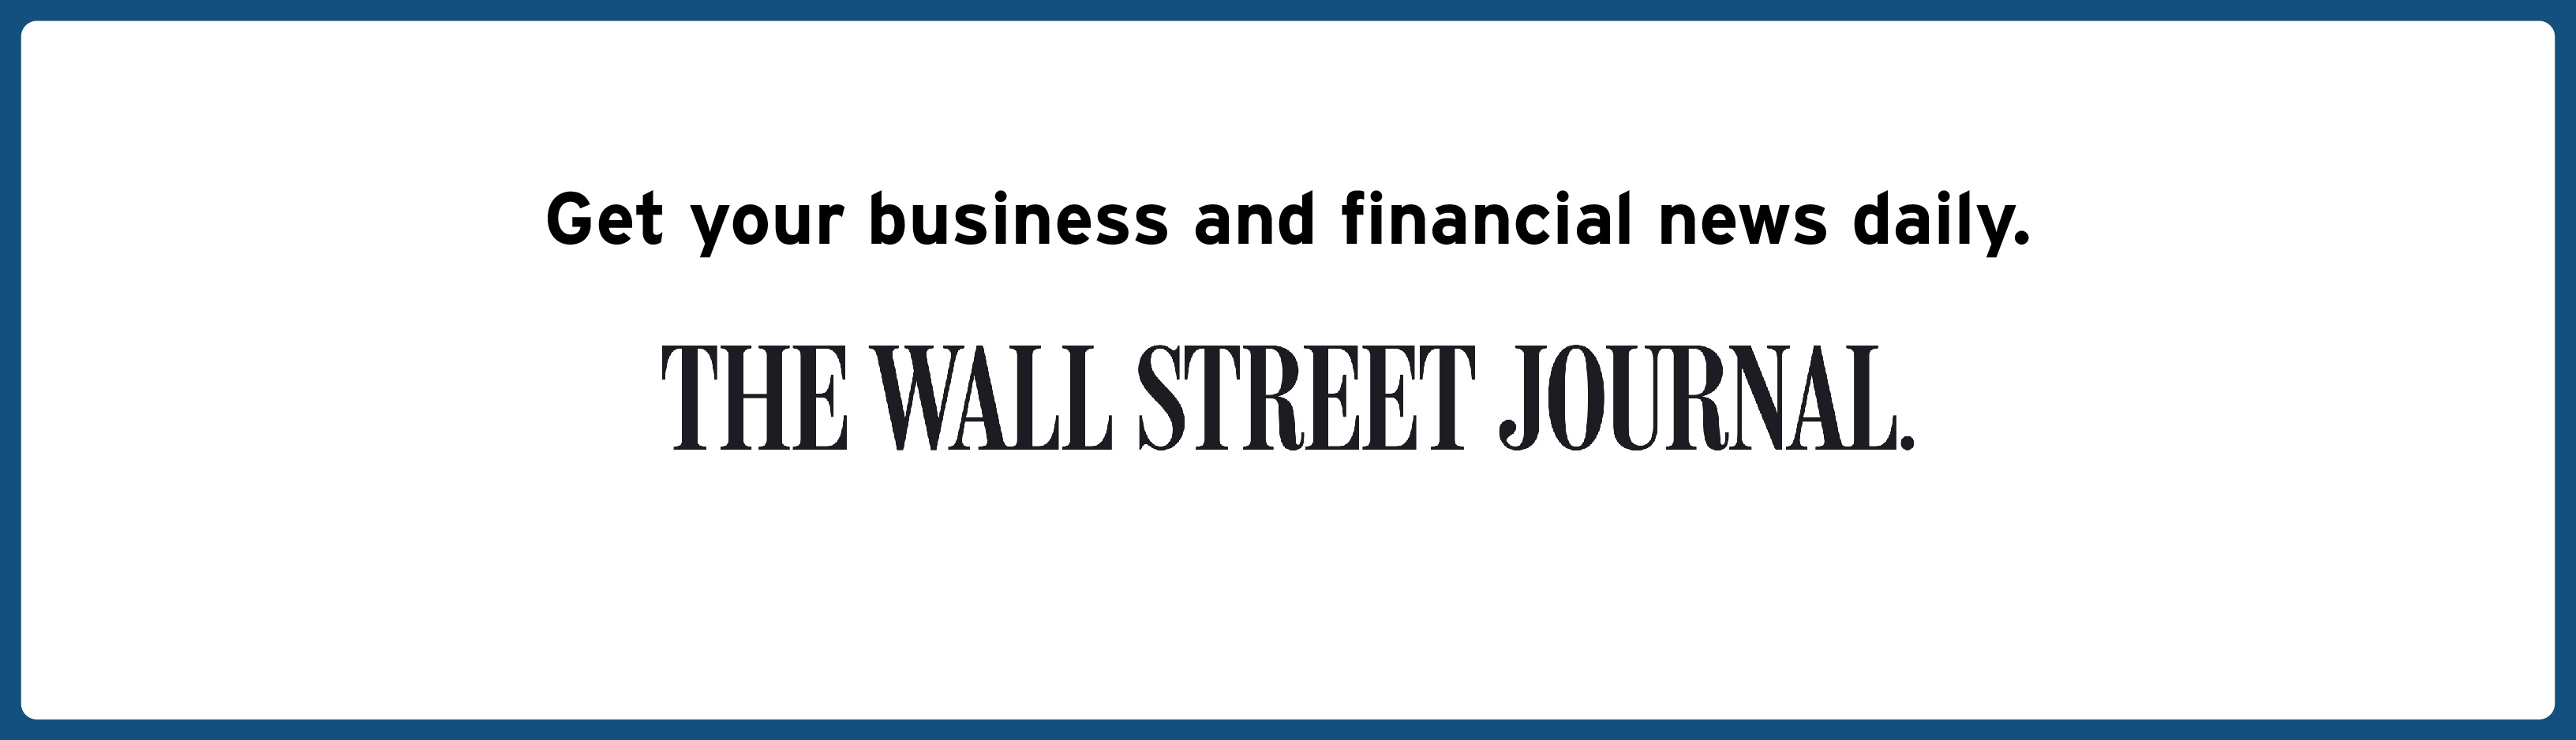 Wall Street Journal Web Slider